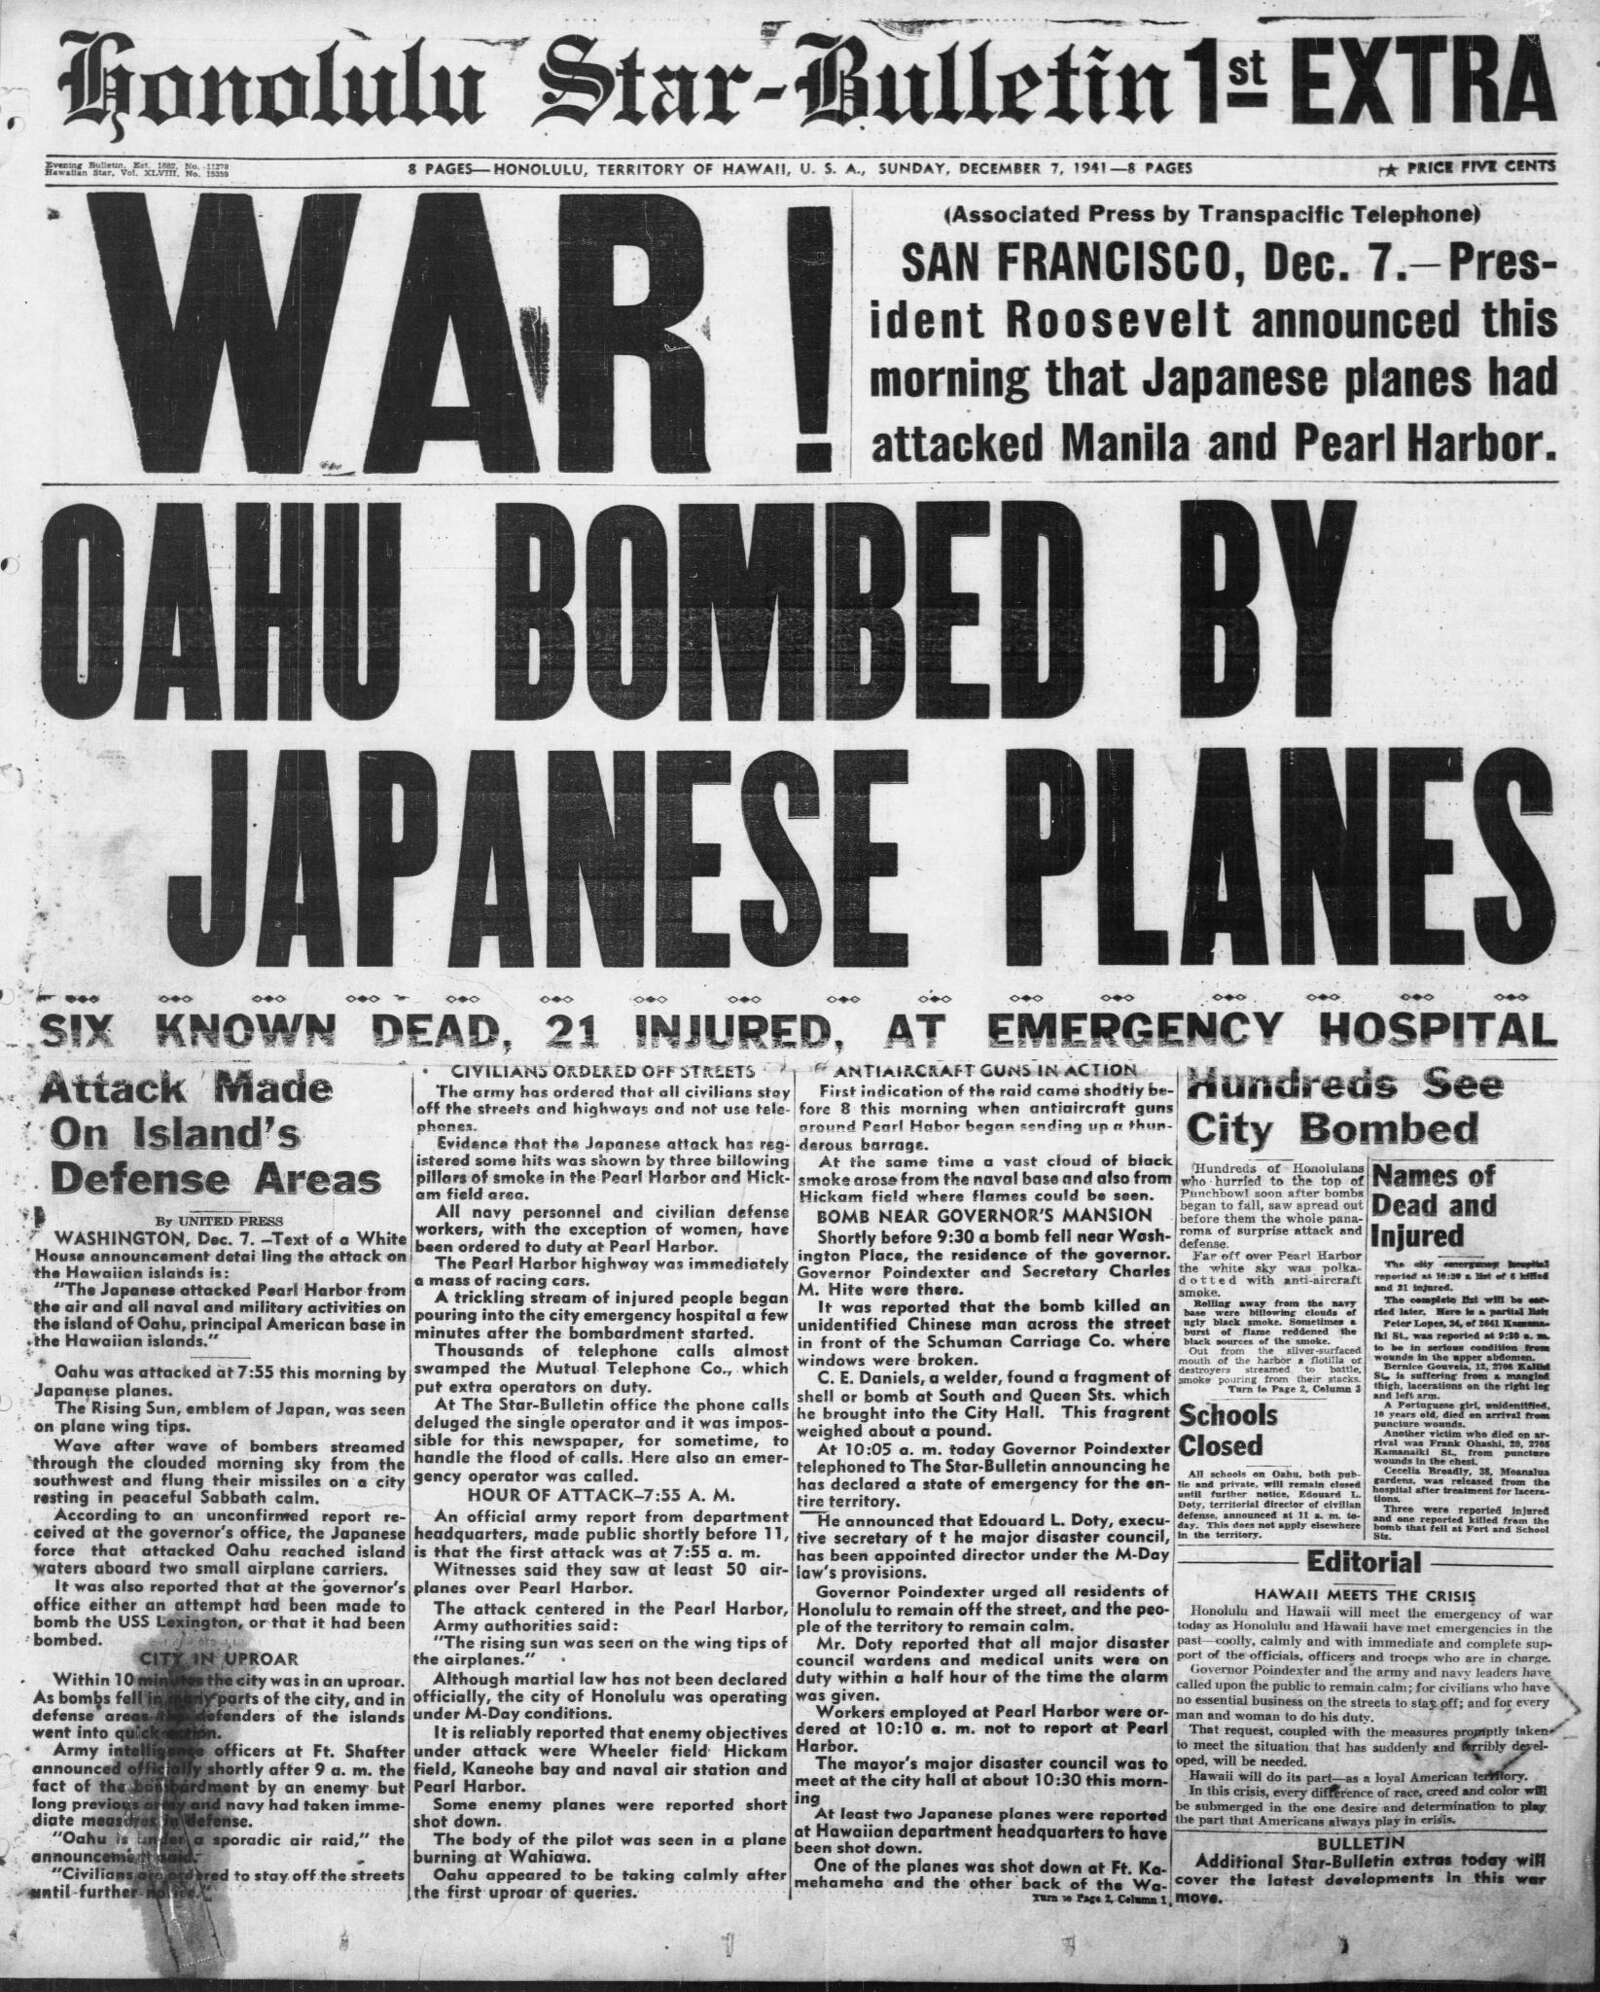 The Honolulu Star-Bulletin, December 7, 1941.